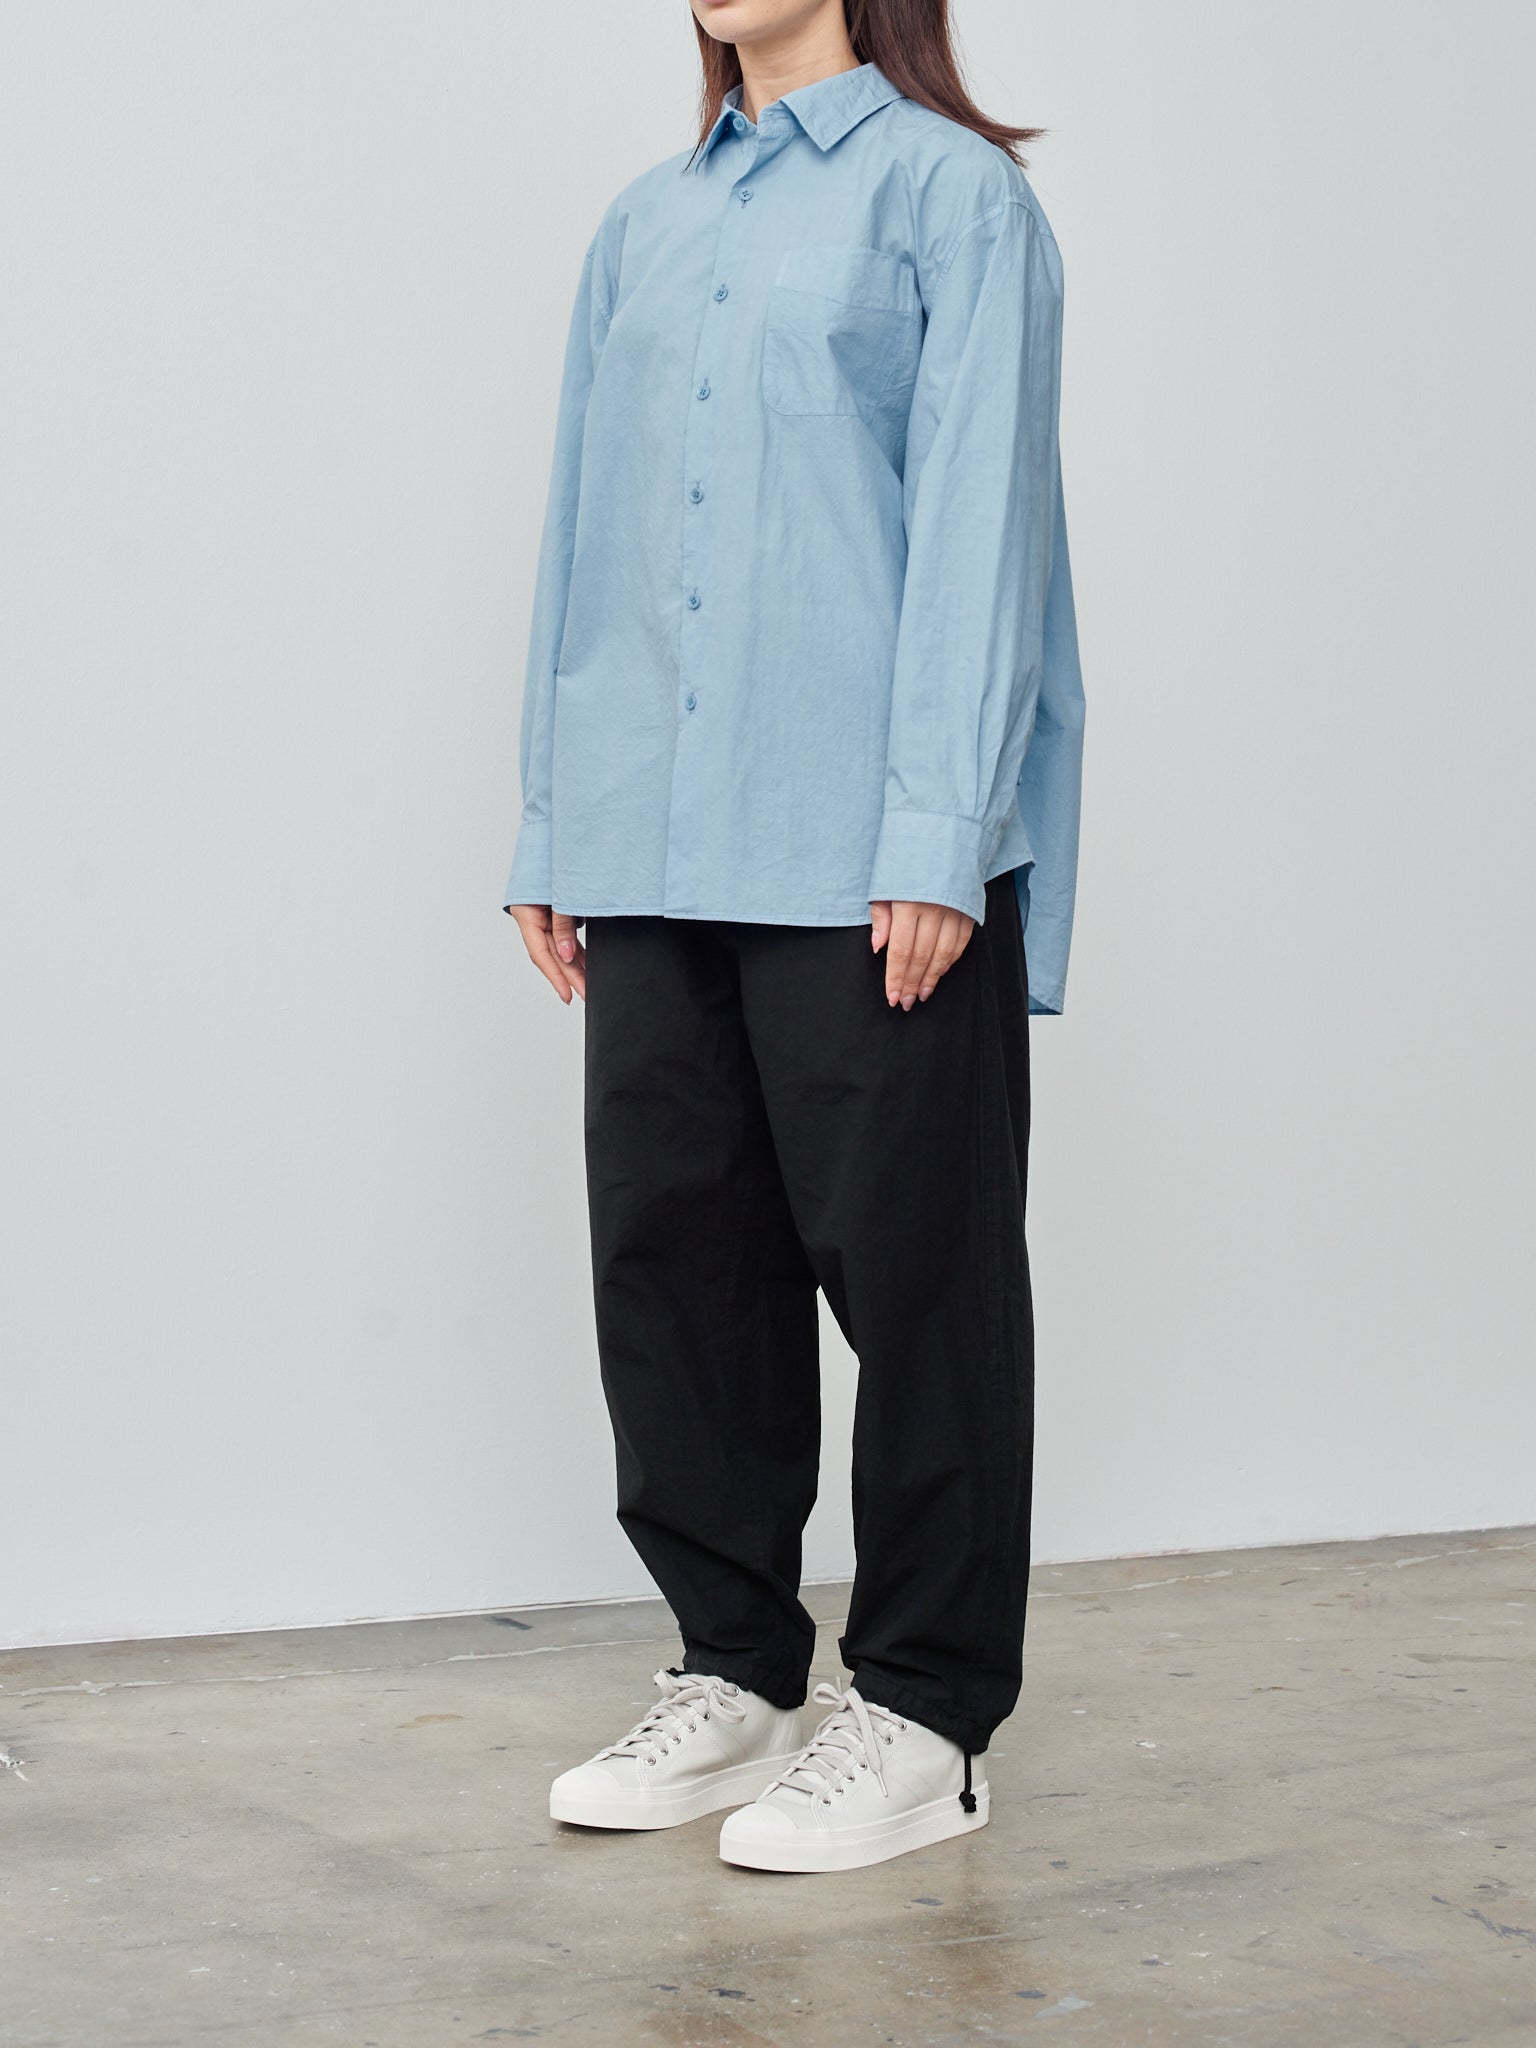 Namu Shop - Yoko Sakamoto Regular Collar Shirt - Sky Blue